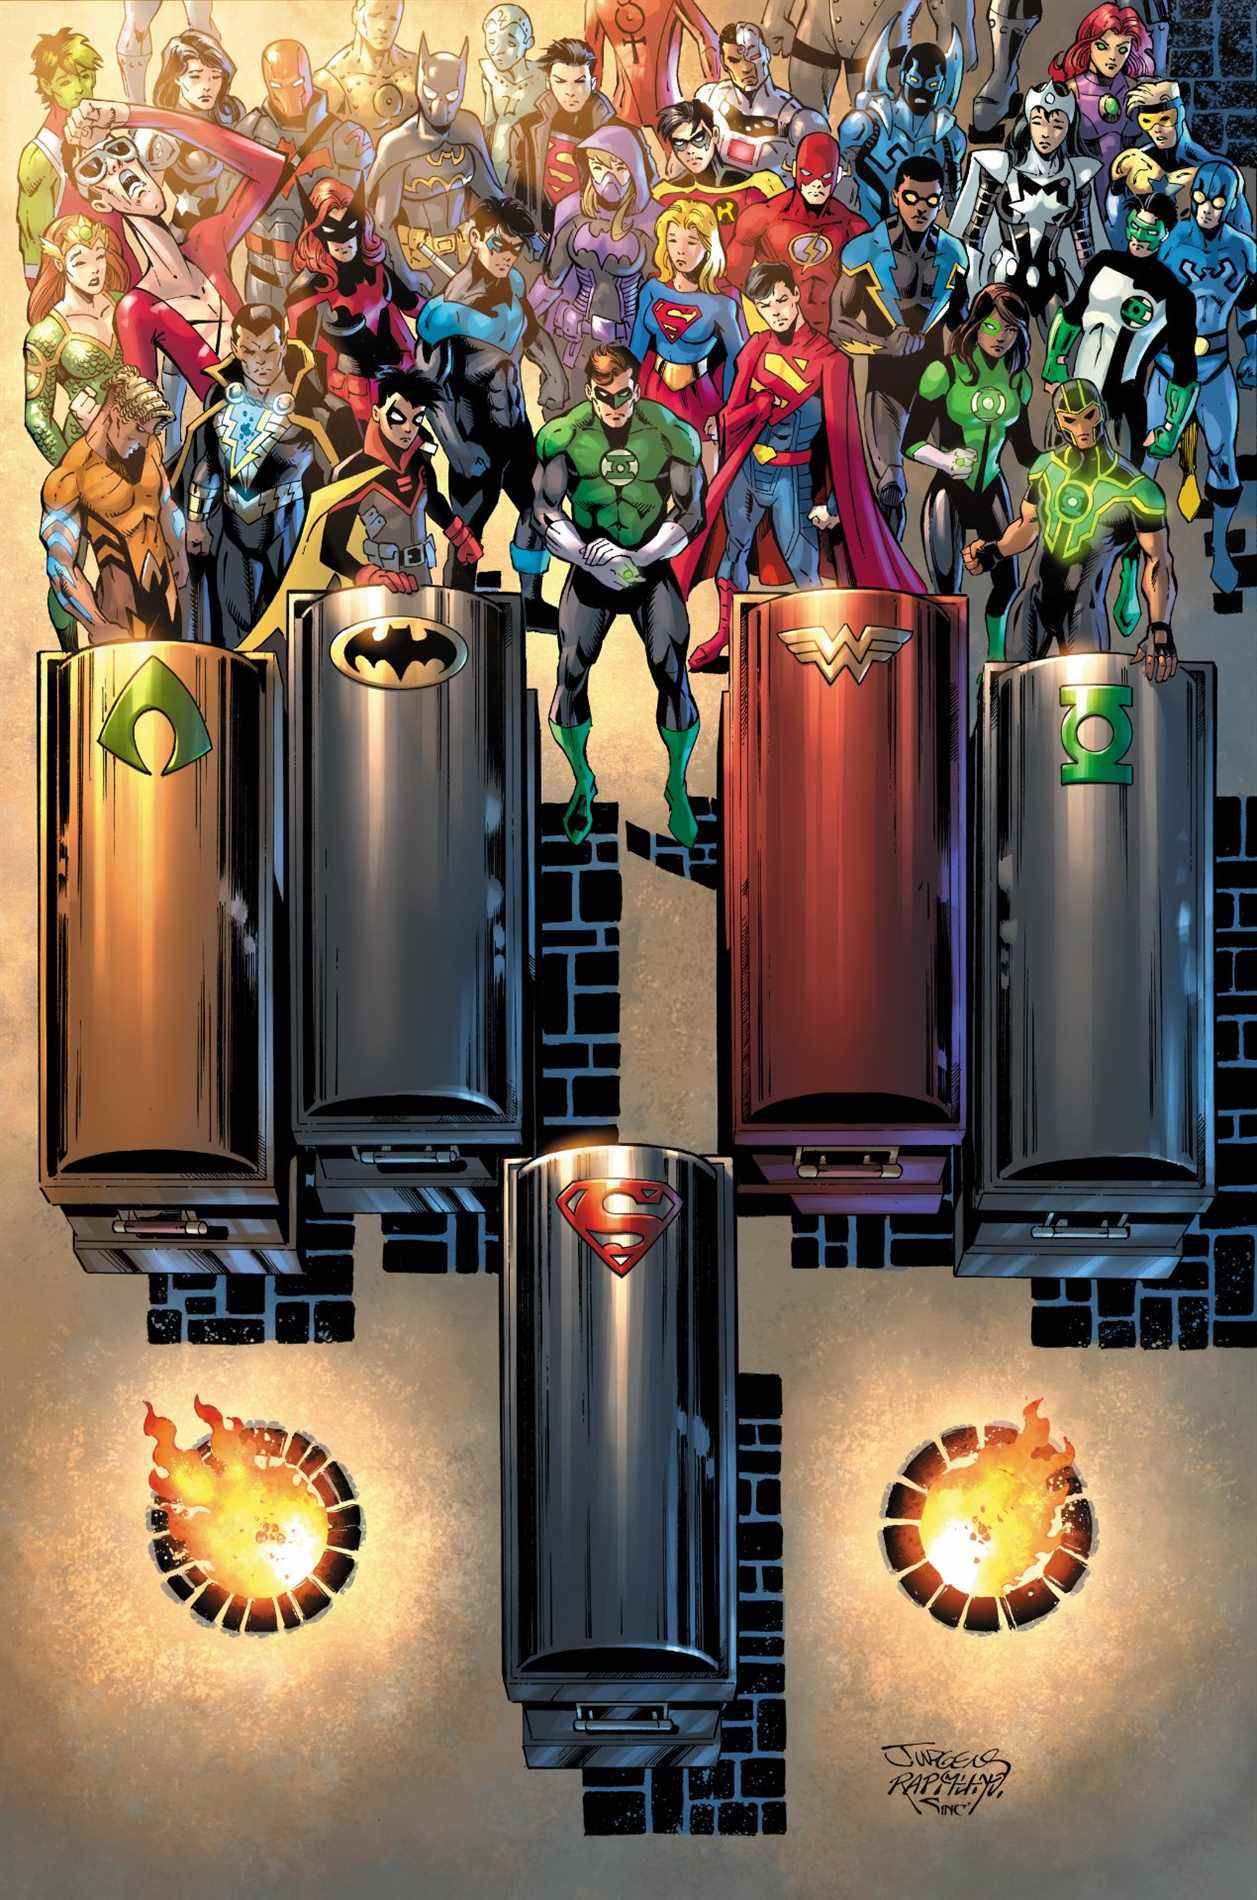 Couverture de la variante Justice League # 75 par Dan Jurgens et Norm Rapmund